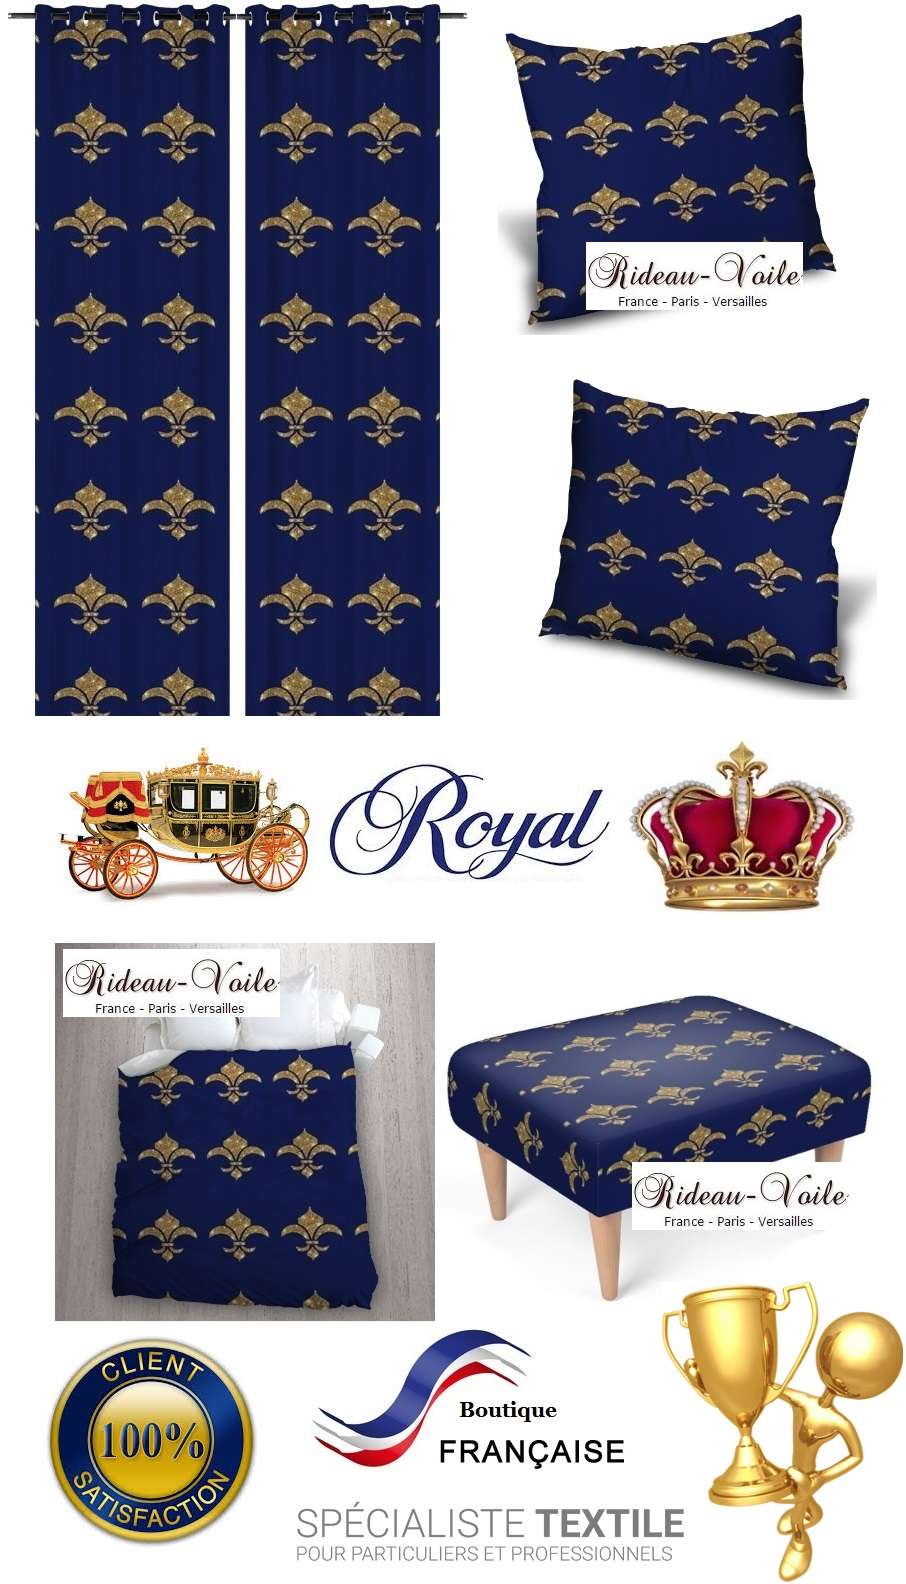 royal fauteuil siège rideau coussin tapisserie garnissage décoration décorateur style Empire fleur de lys or bleu déco luxe paris versailles